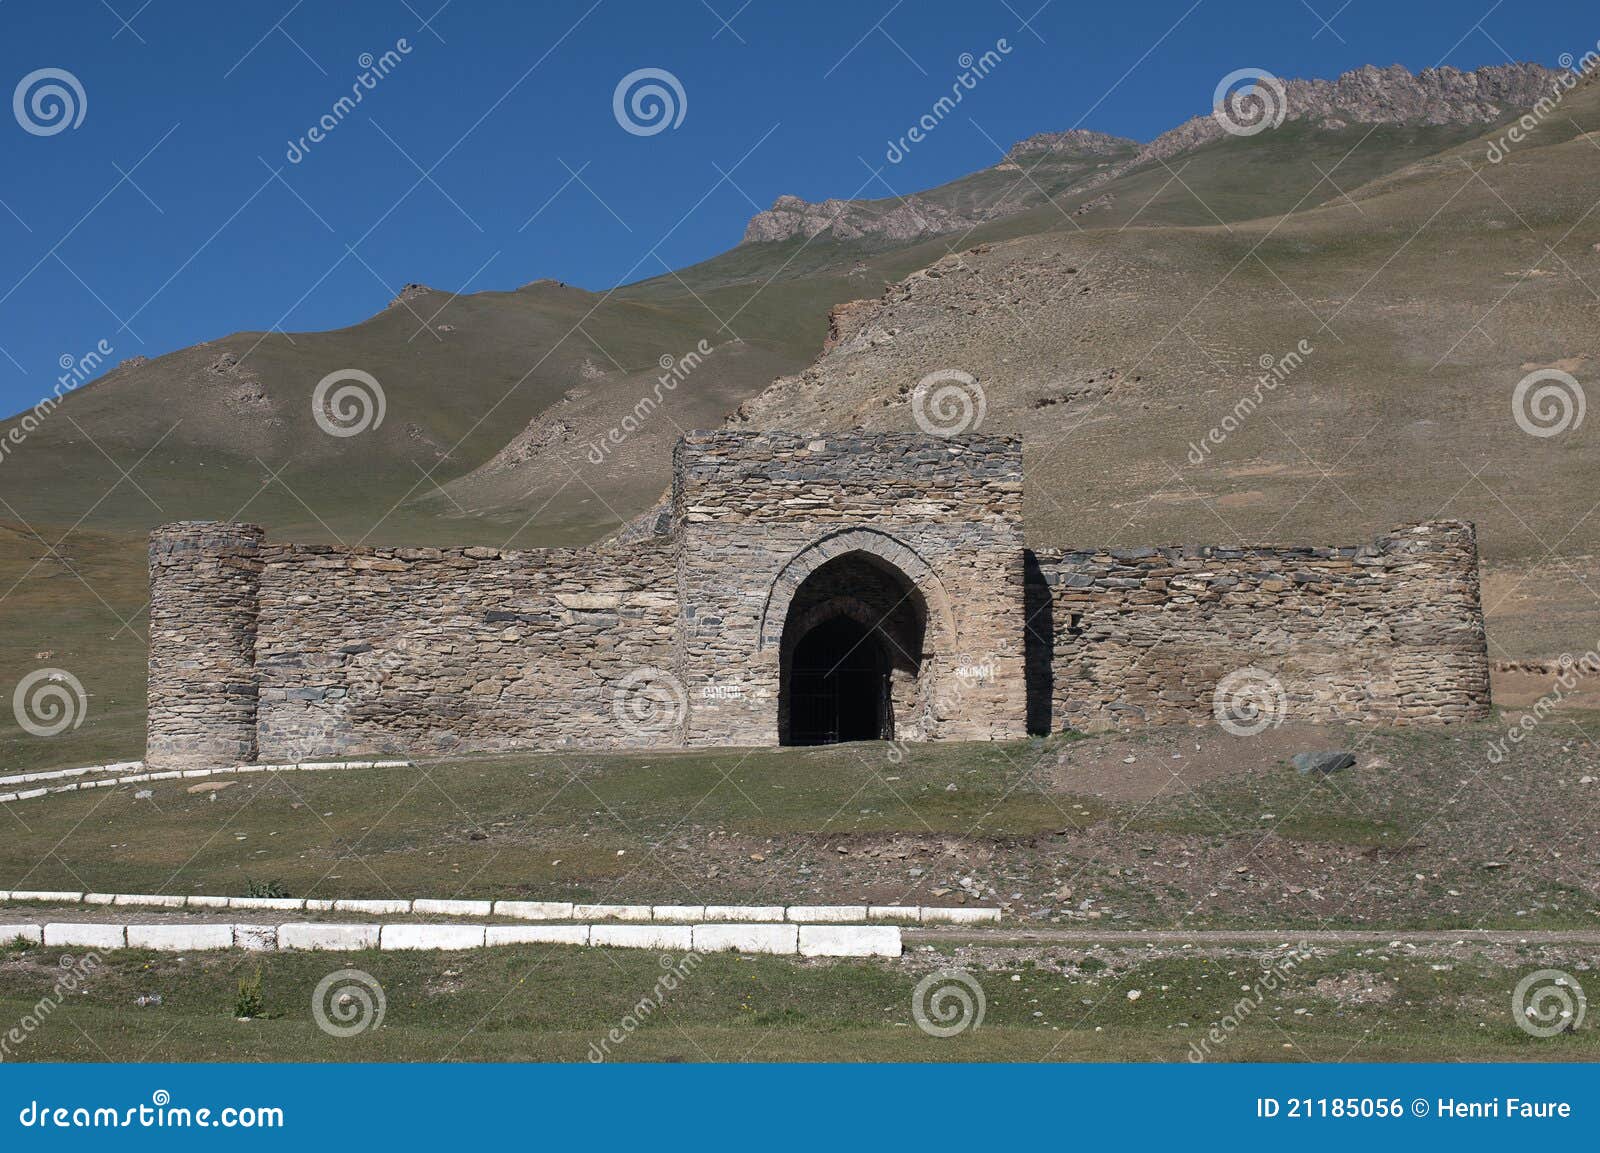 tash rabat castle in kyrgystan